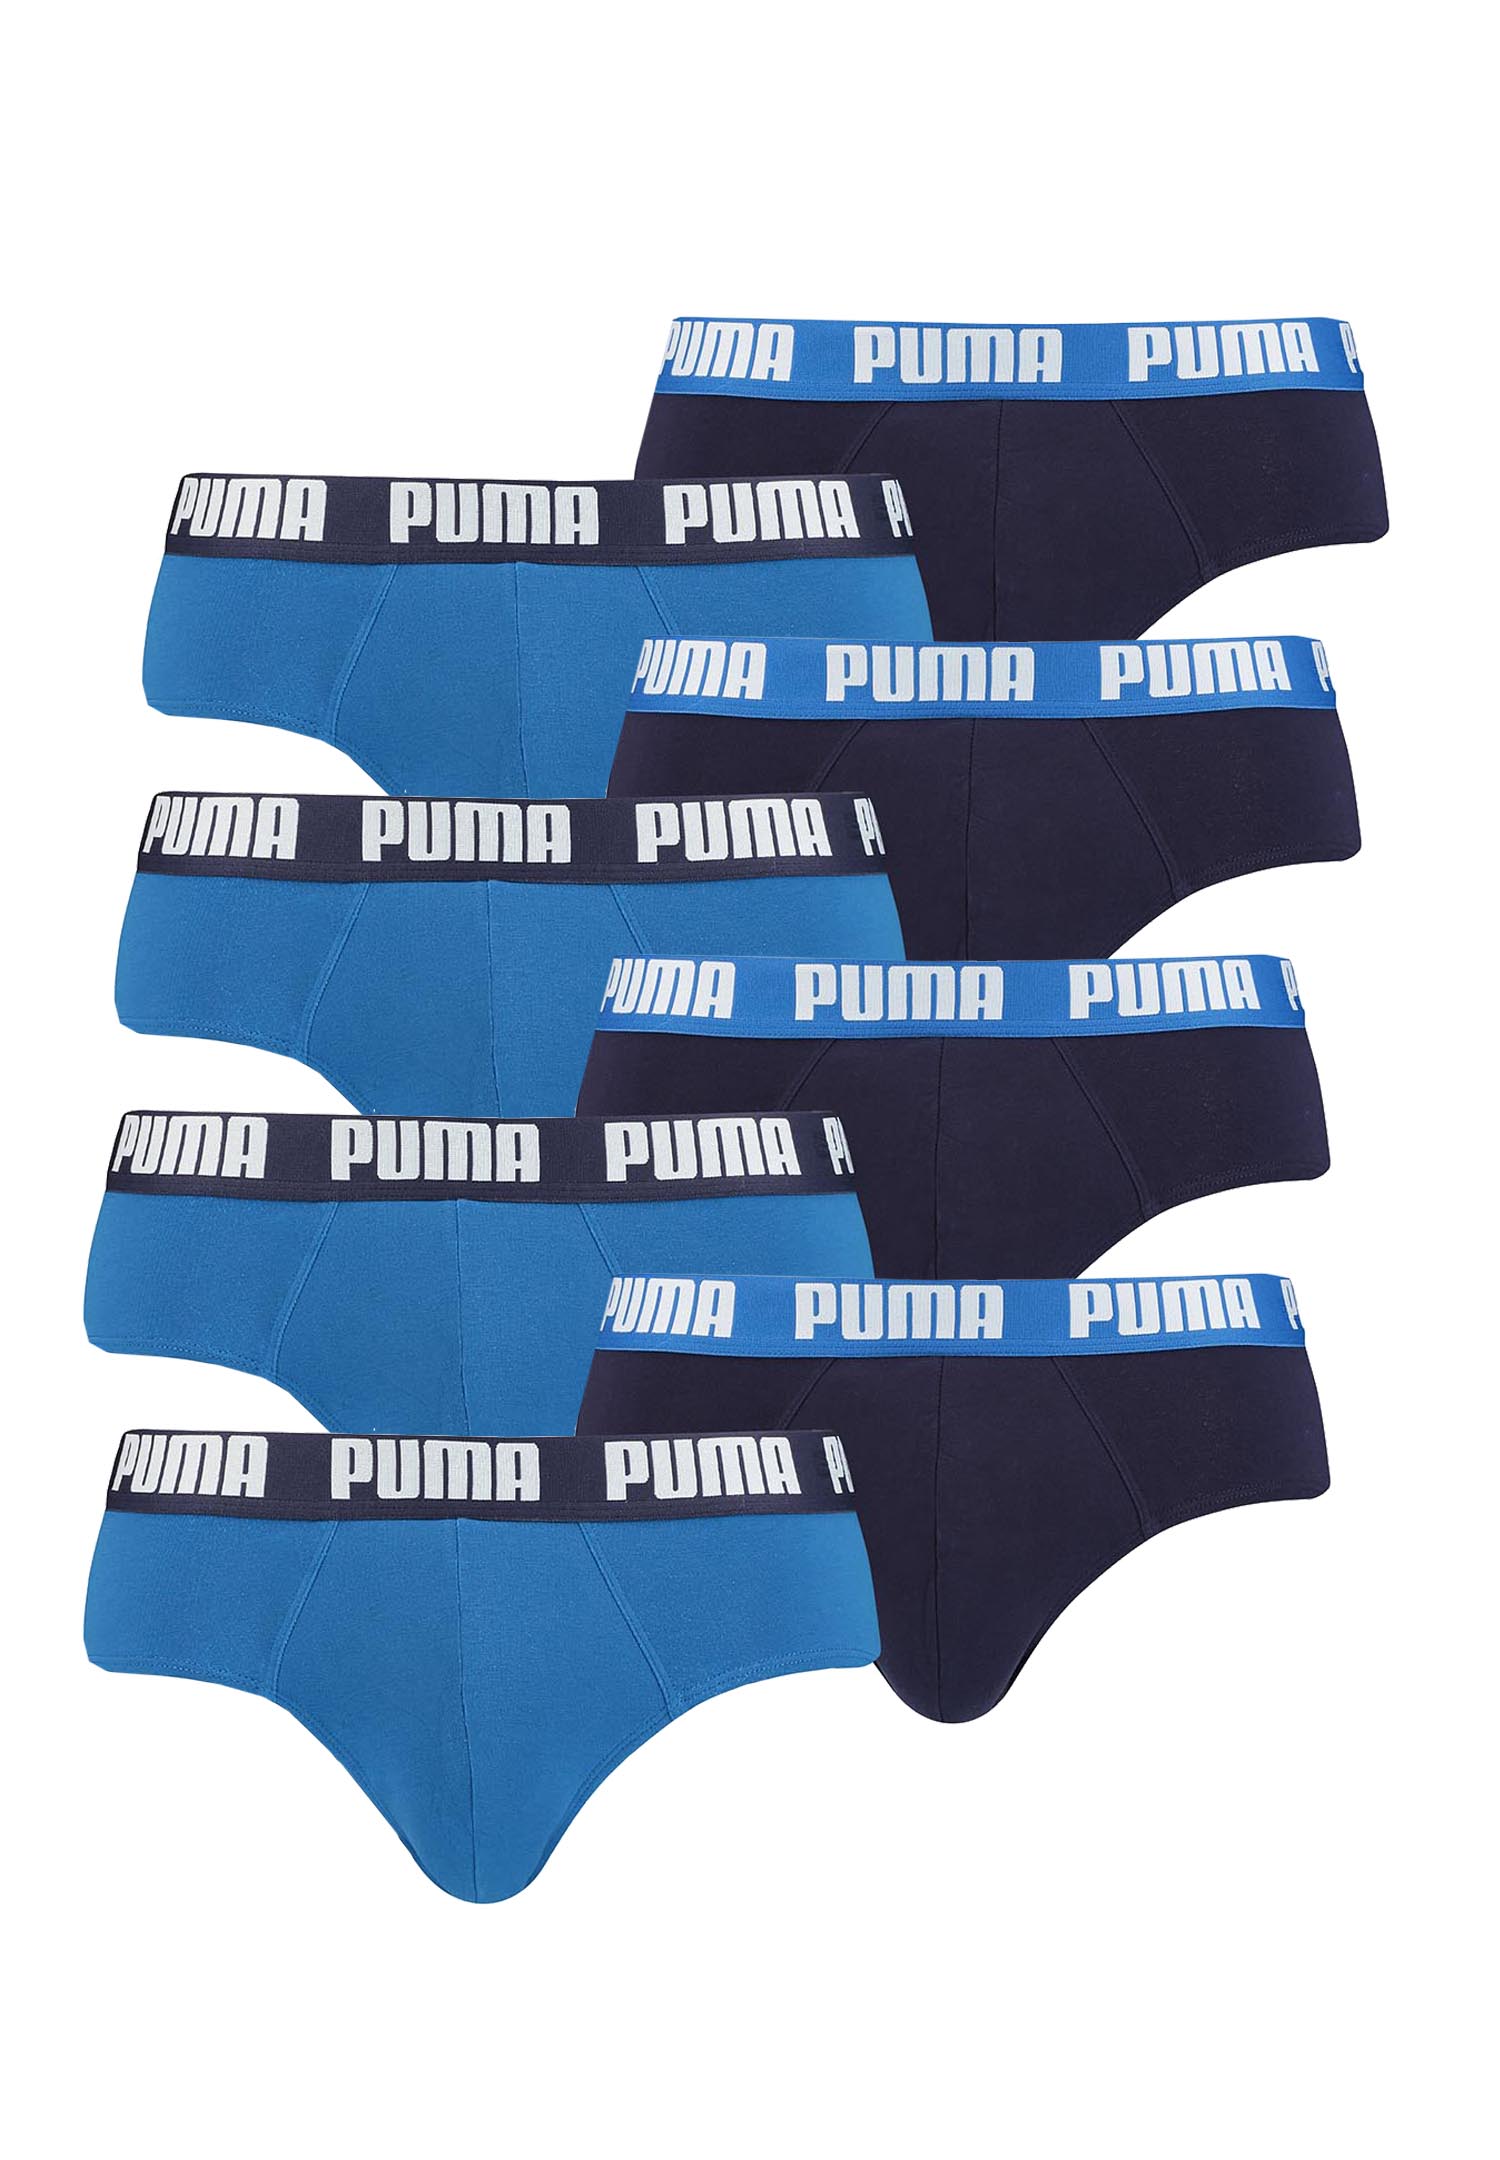 Puma Basic Brief Men Herren Unterhose Pant Unterwäsche 8er Pack